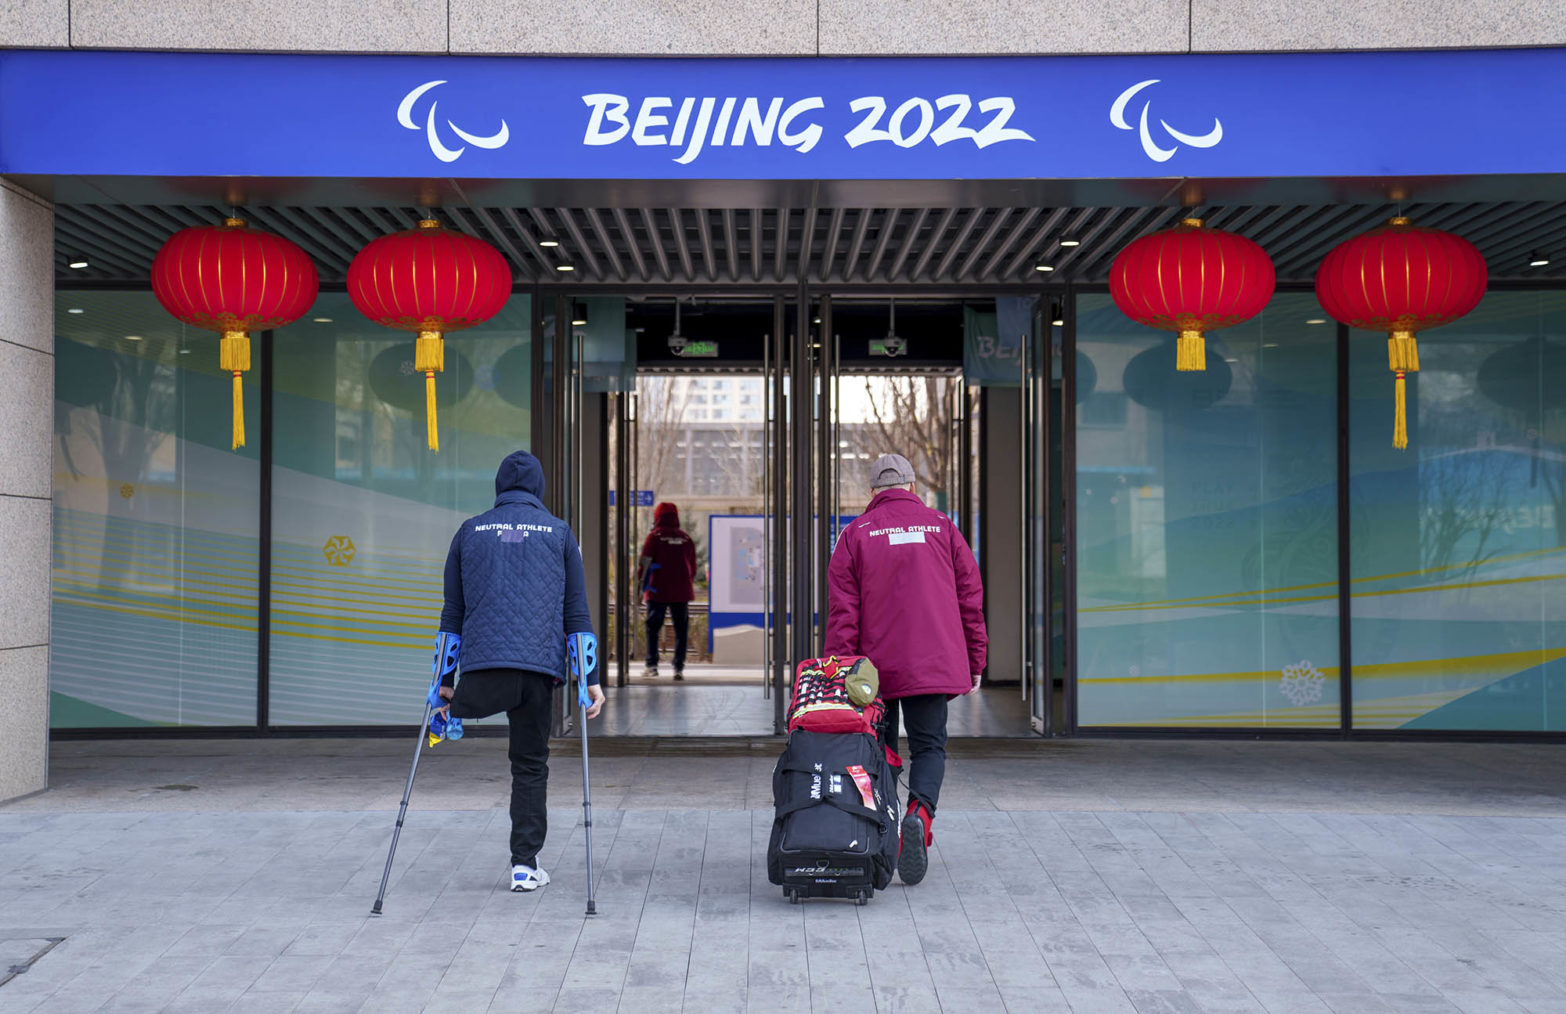 To peroner på vei inn i bygning med teksten «Beijing 2022» over døra, som er prydet med kinesiske lykter. Den ene mangler et bein og går på krykker.